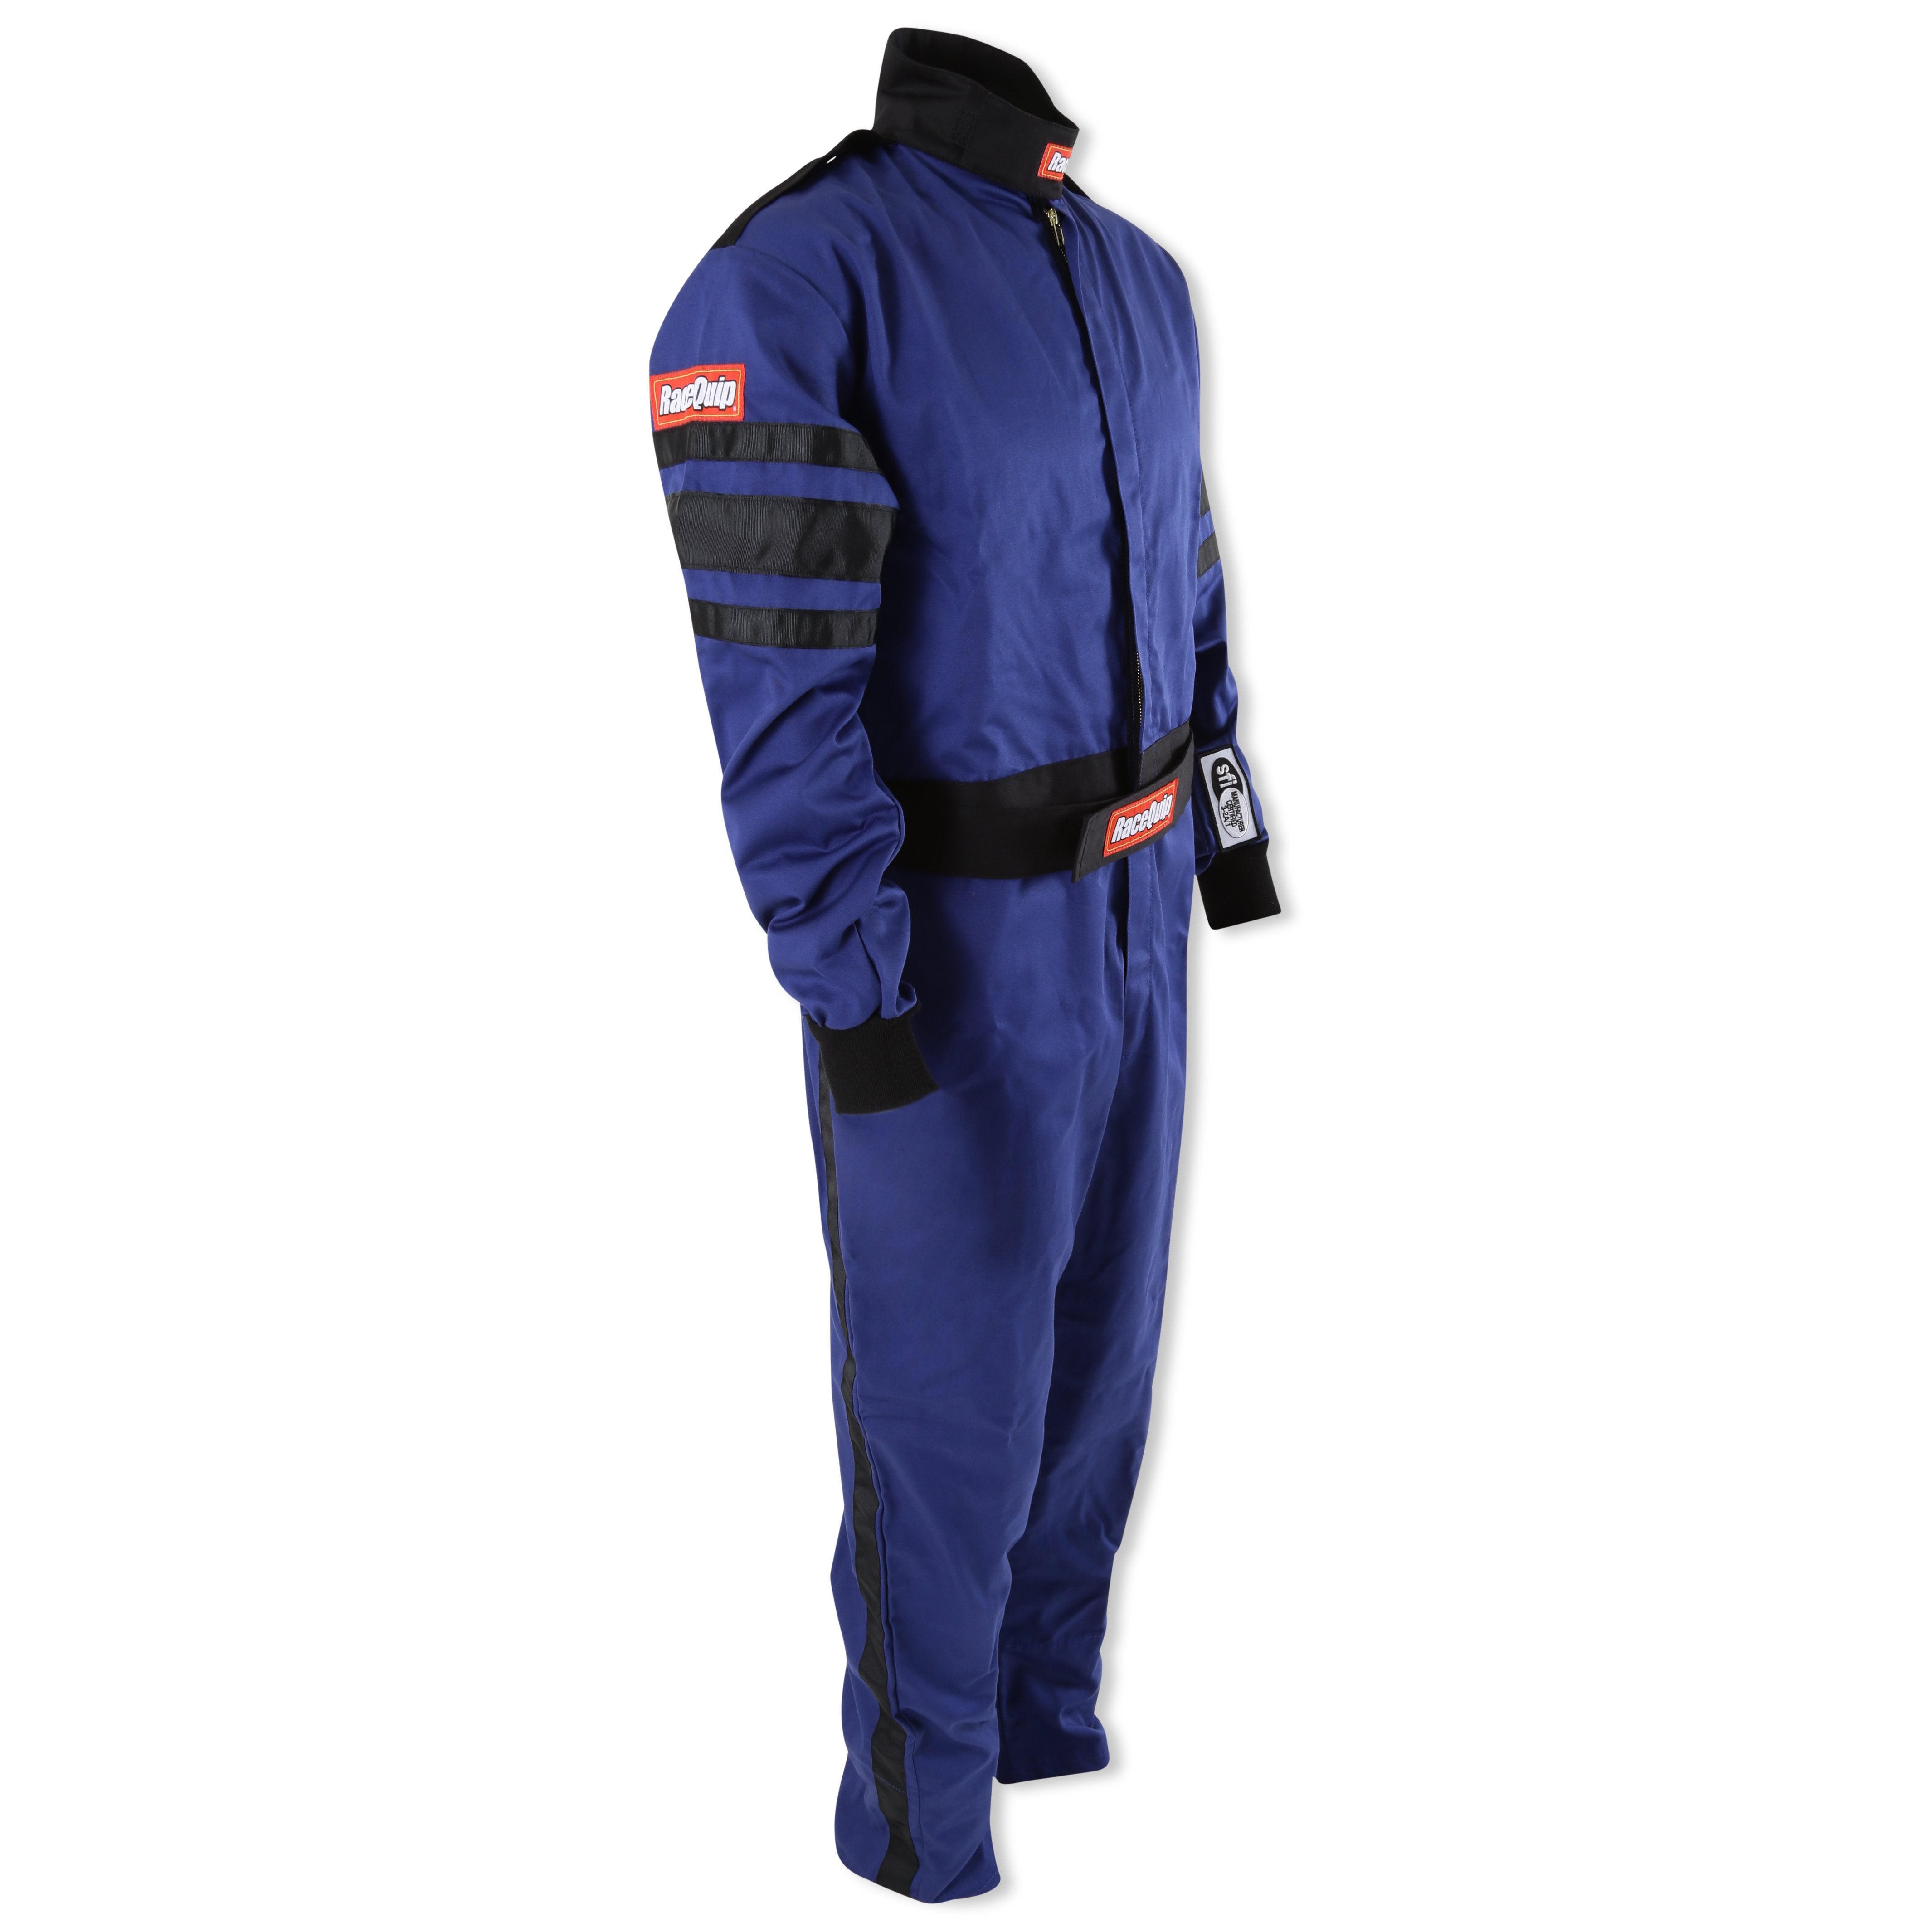 RaceQuip Blue SFI-5 Suit - Medium - 0